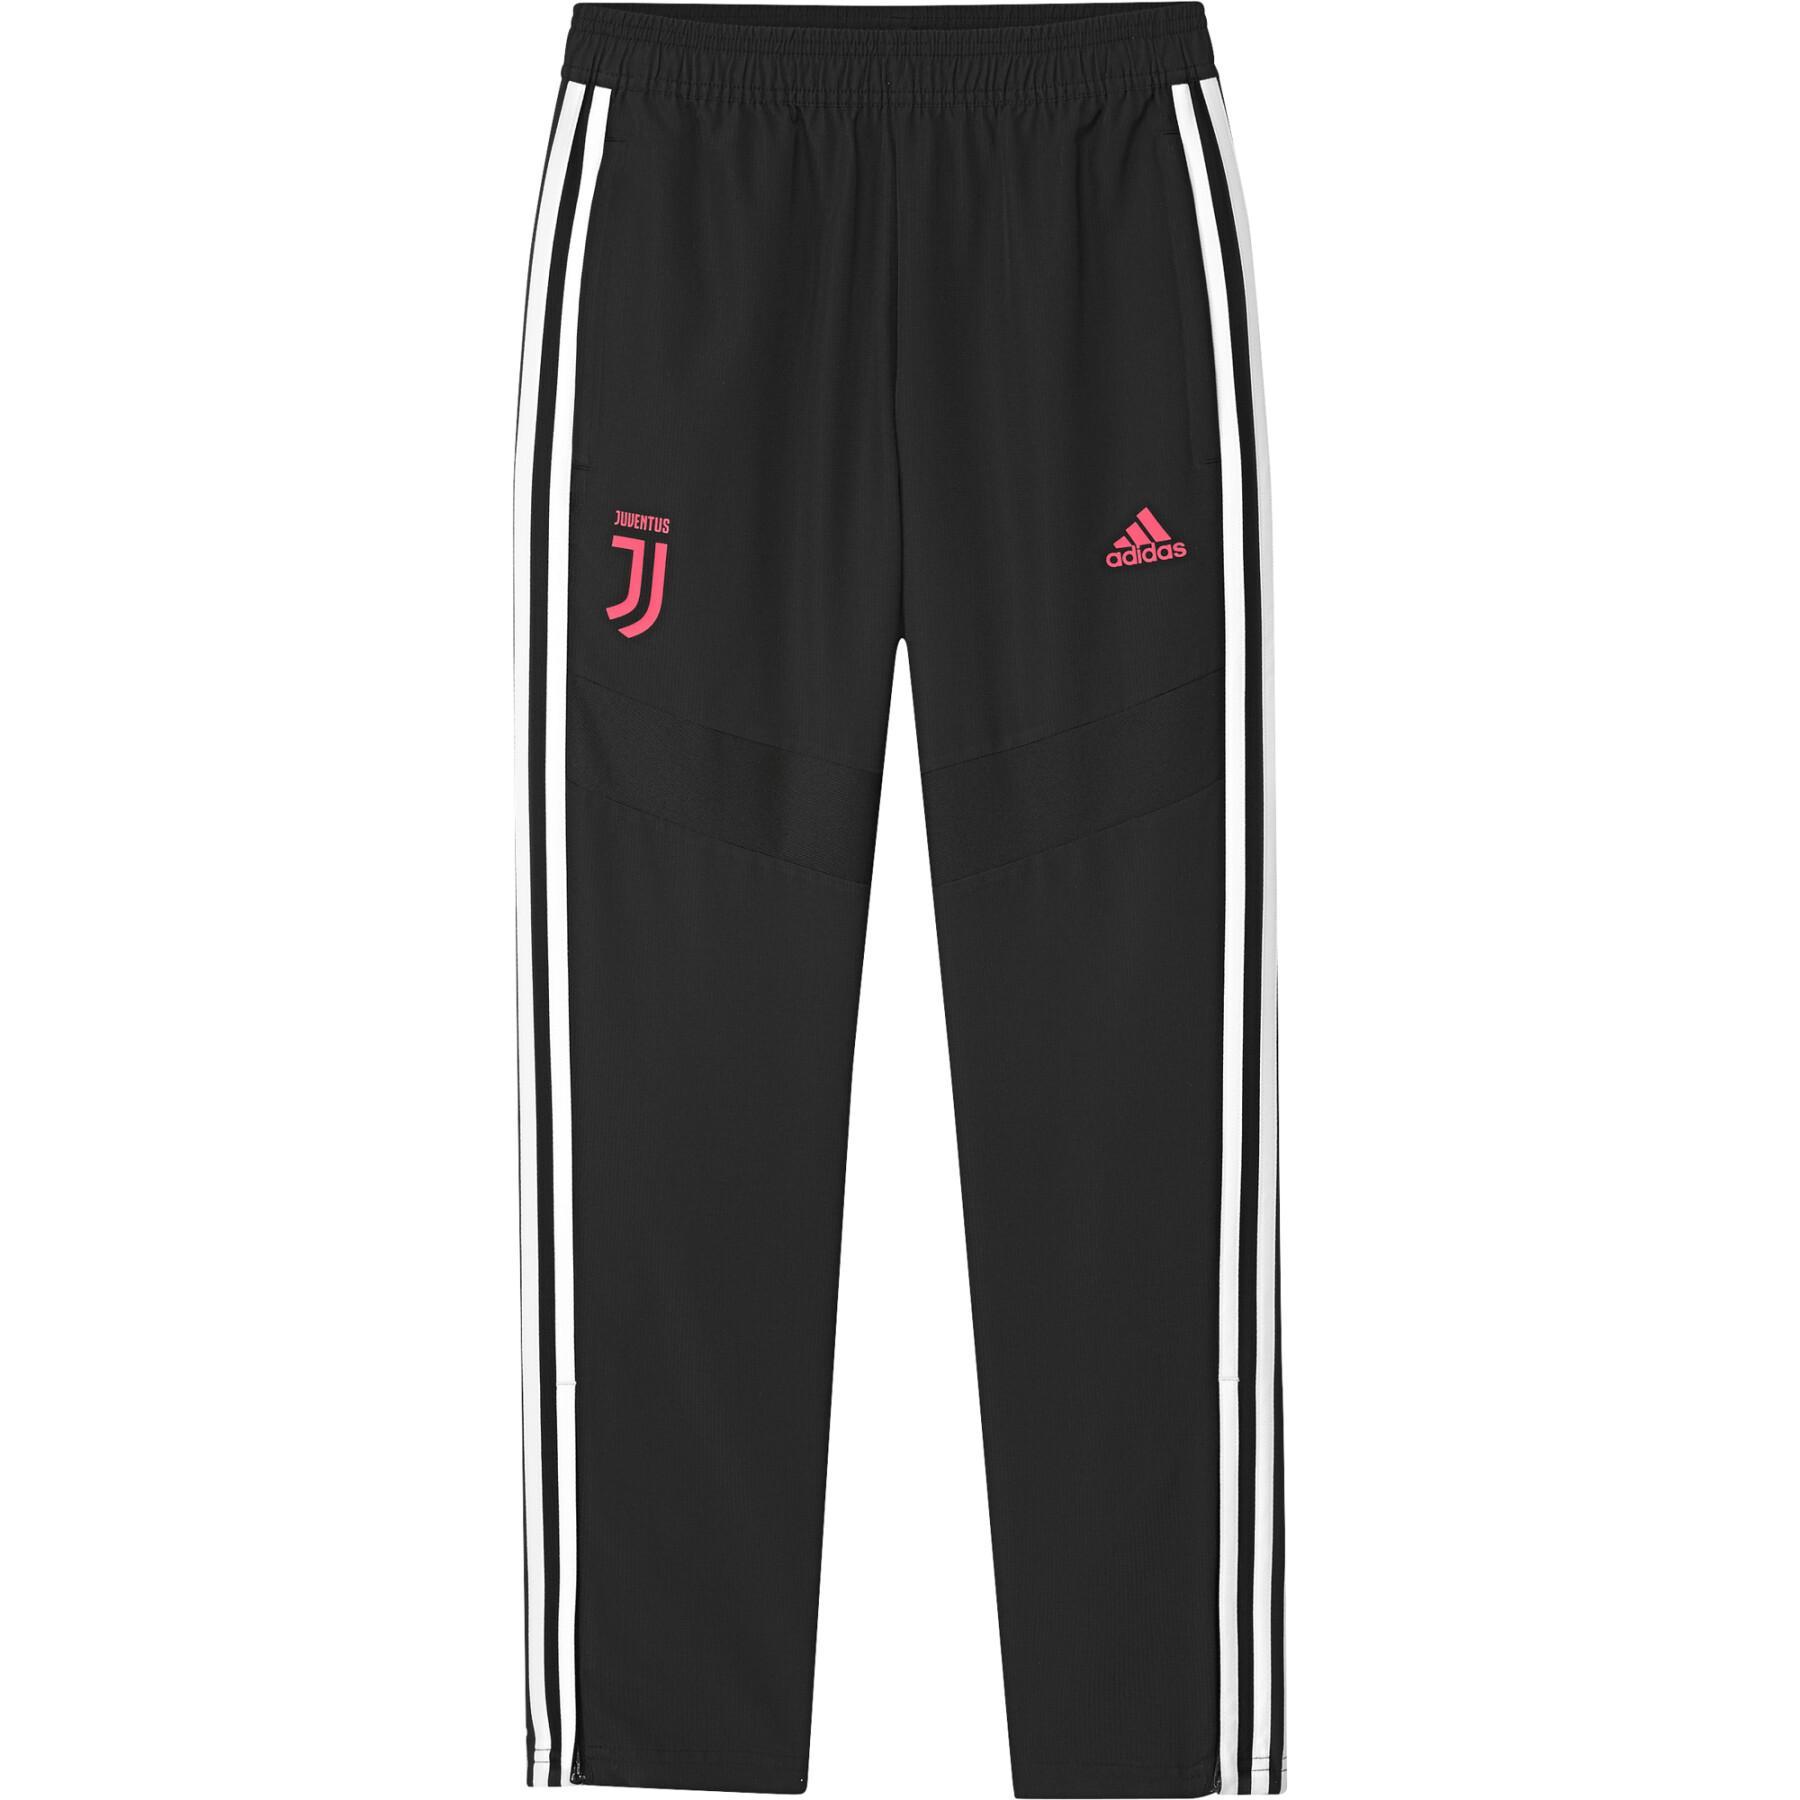 Pantalones de chándal para niños Juventus Turin 2019/20